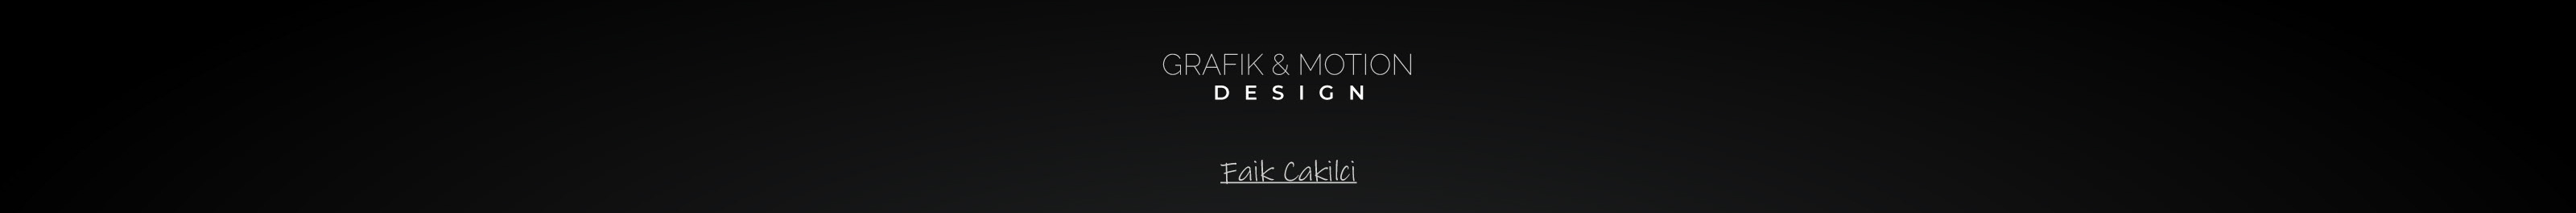 Faik Çakılcı's profile banner